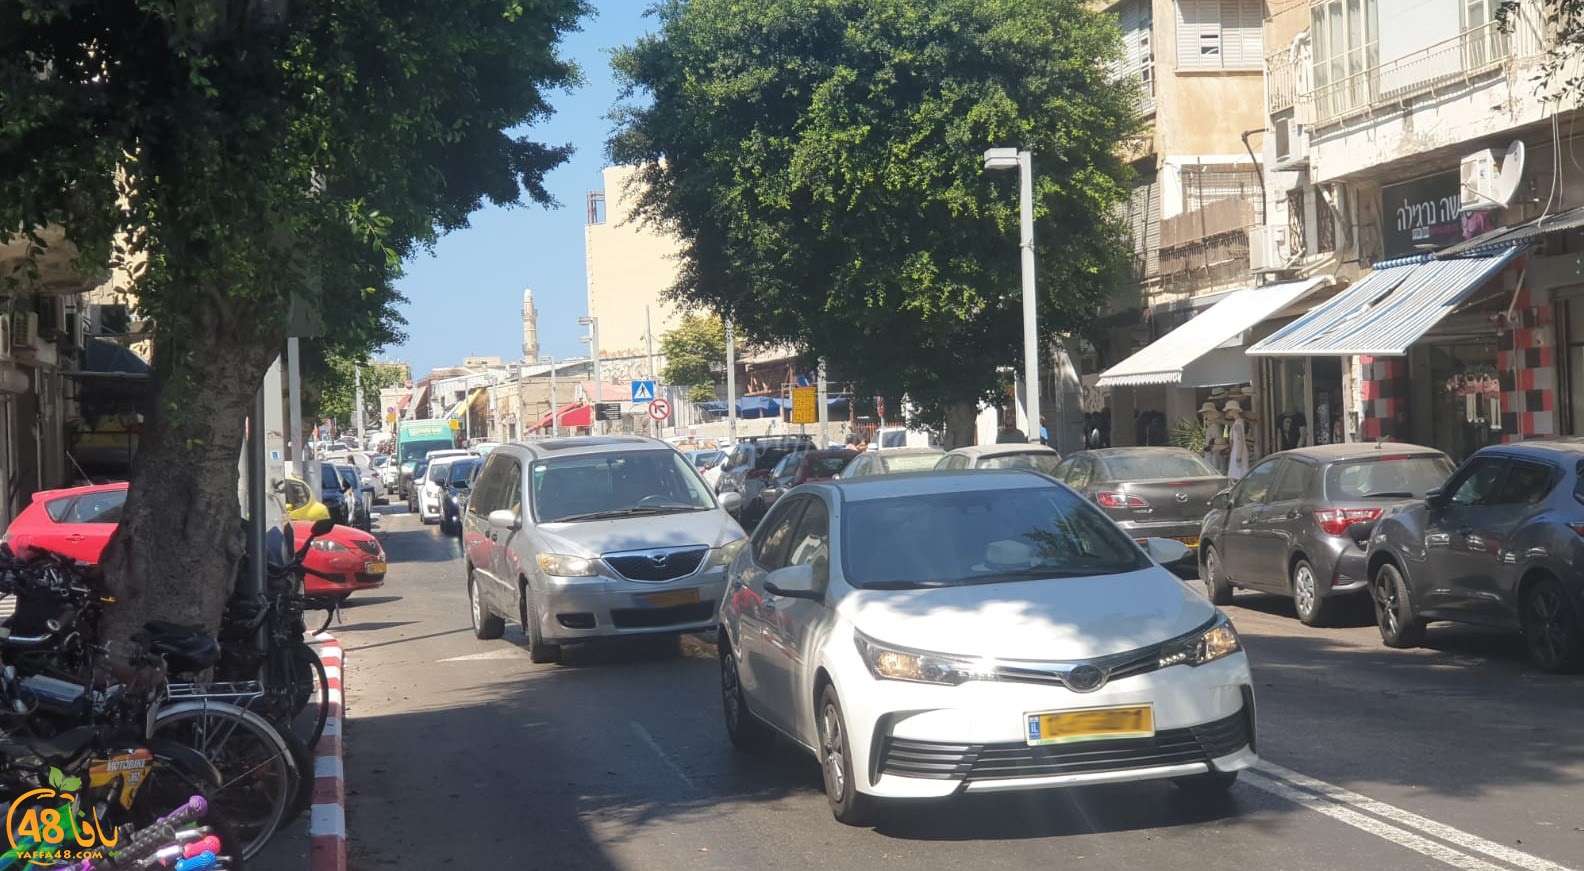  فيديو: حافلة ركاب تتسبب بأزمة مرورية خانقة في مدينة يافا 